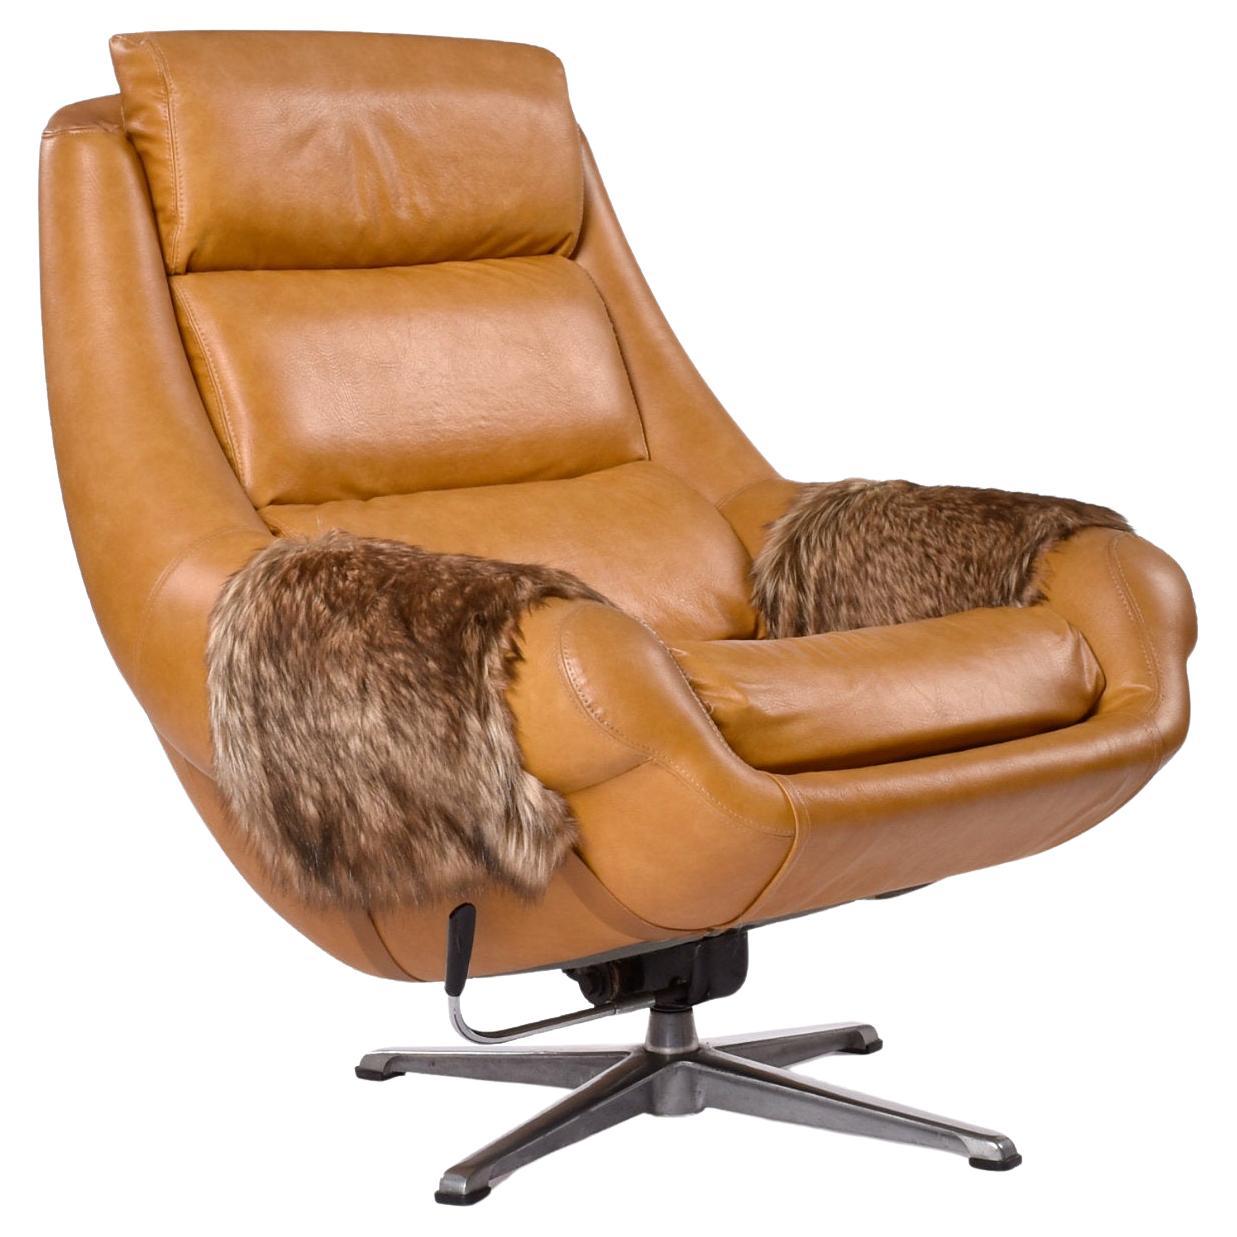 The Moderns Modern 1970s Swivel Pod Chair Recliner with Faux Fur Arms (fauteuil pivotant avec accoudoirs en fausse fourrure) en vente